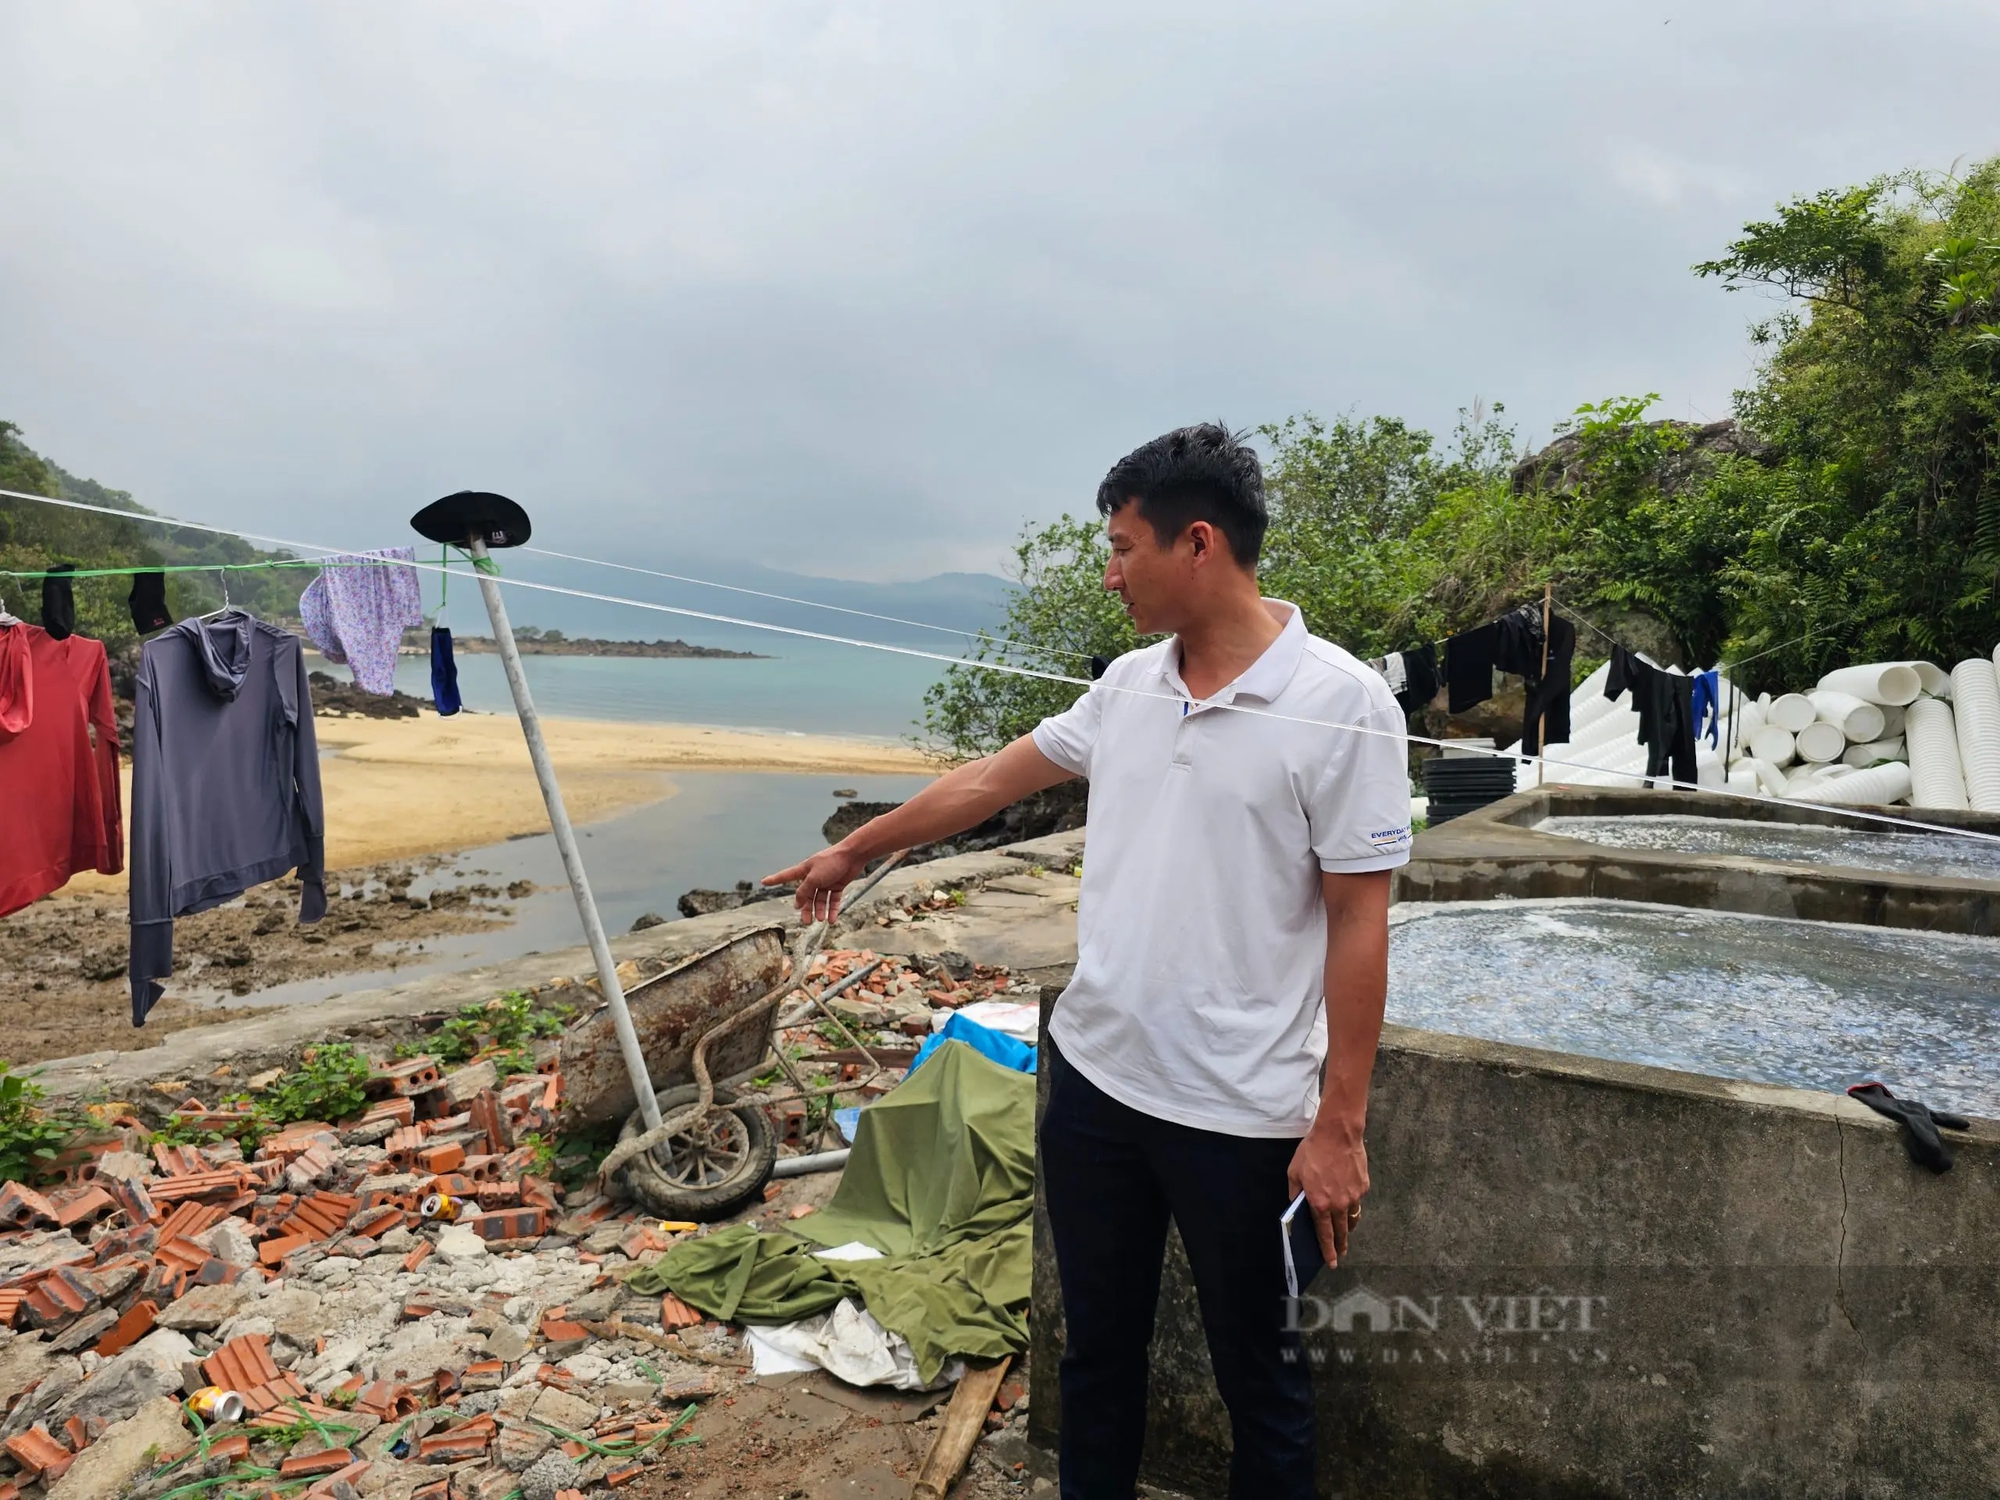 Nhóm người lạ ra xã đảo phá xưởng sứa của người dân ở Quảng Ninh- Ảnh 2.